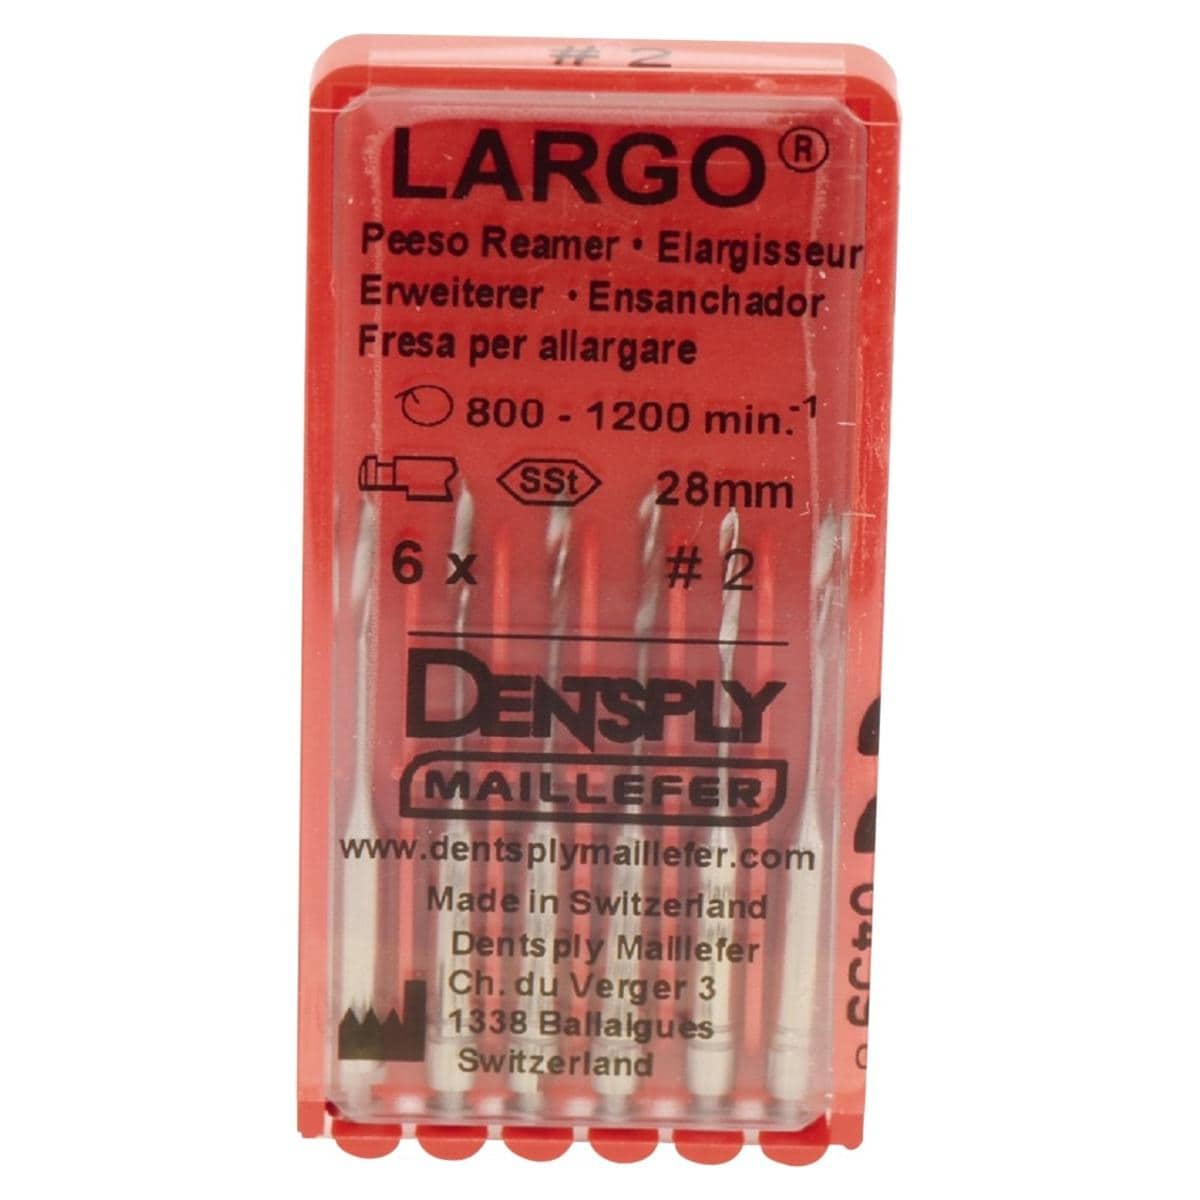 Largo Peeso Reamer - Size 2,  0,90 mm, 32 mm, 6 stuks